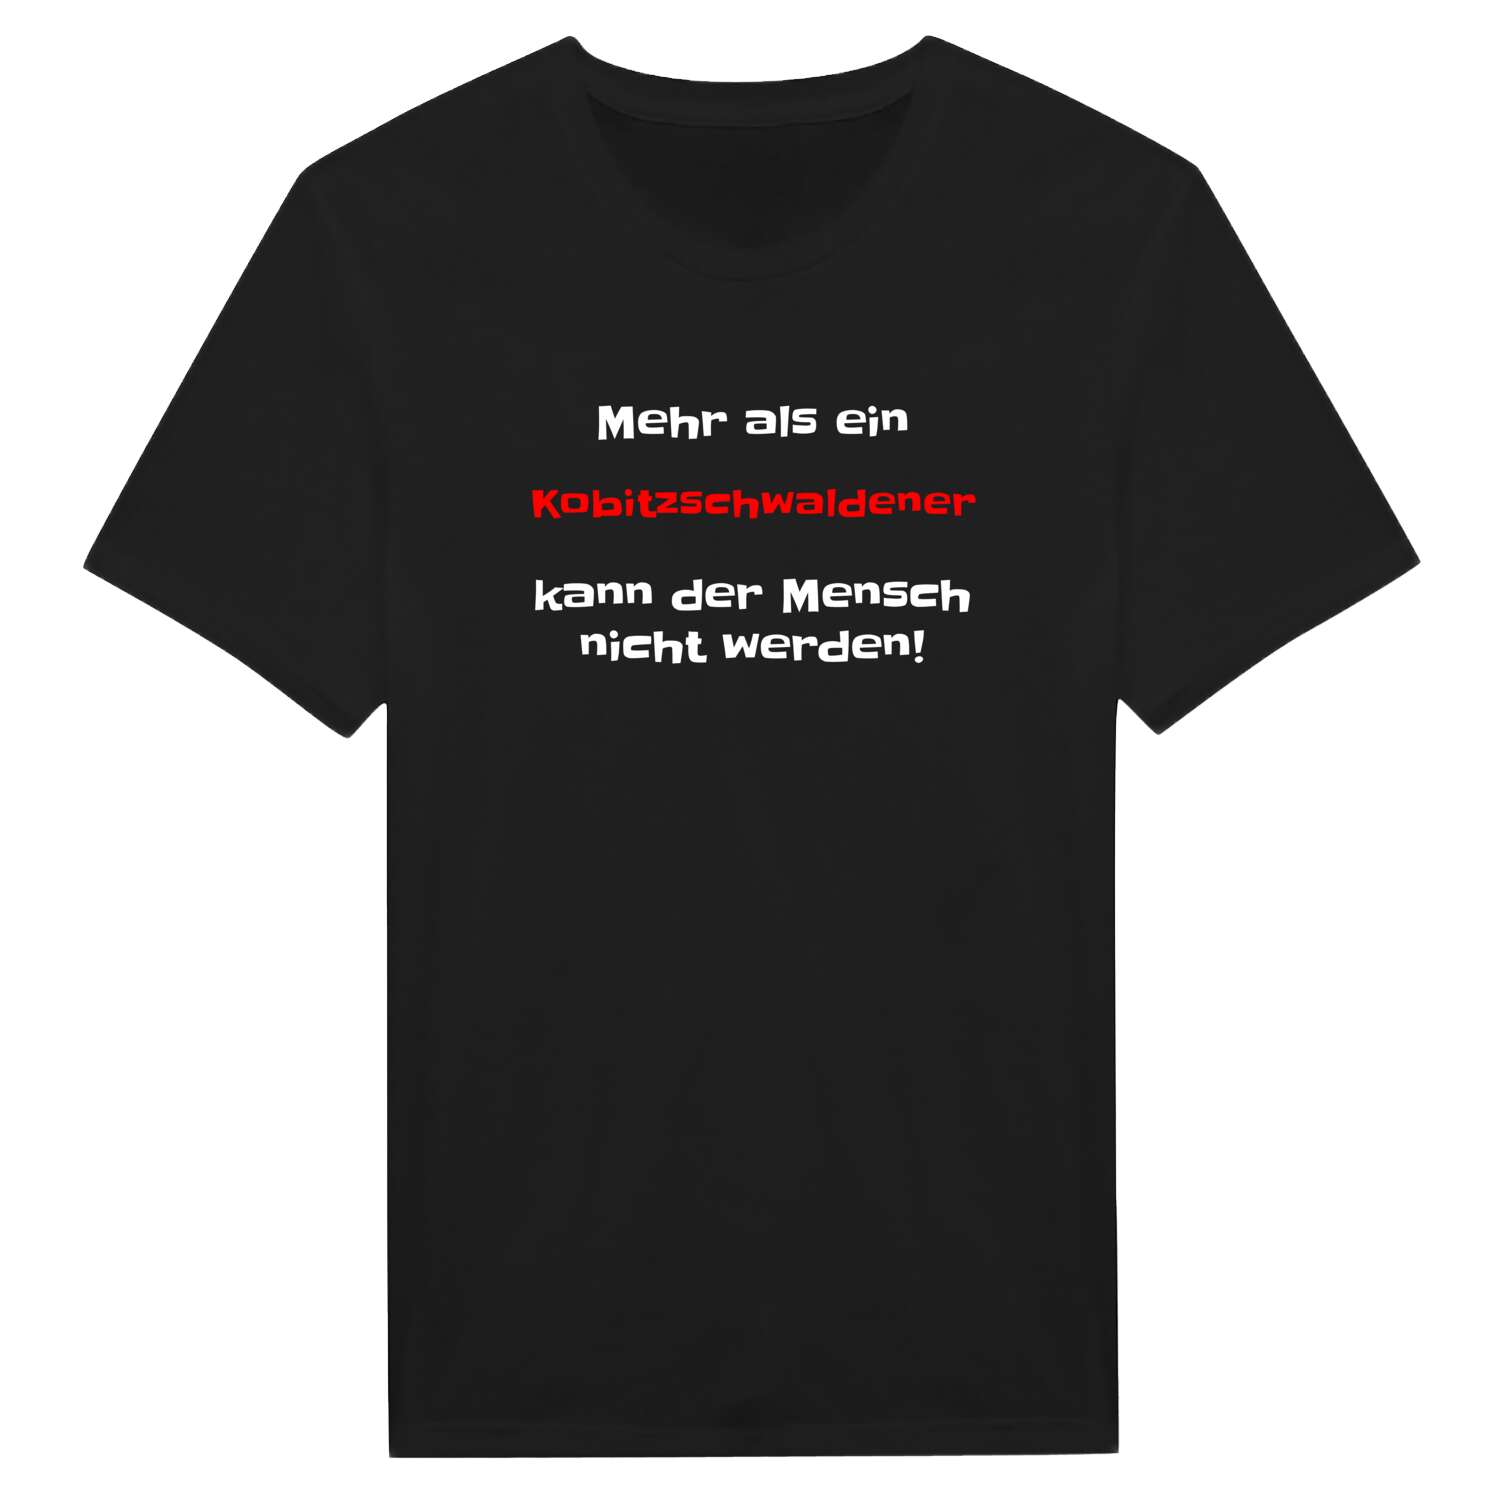 Kobitzschwalde T-Shirt »Mehr als ein«